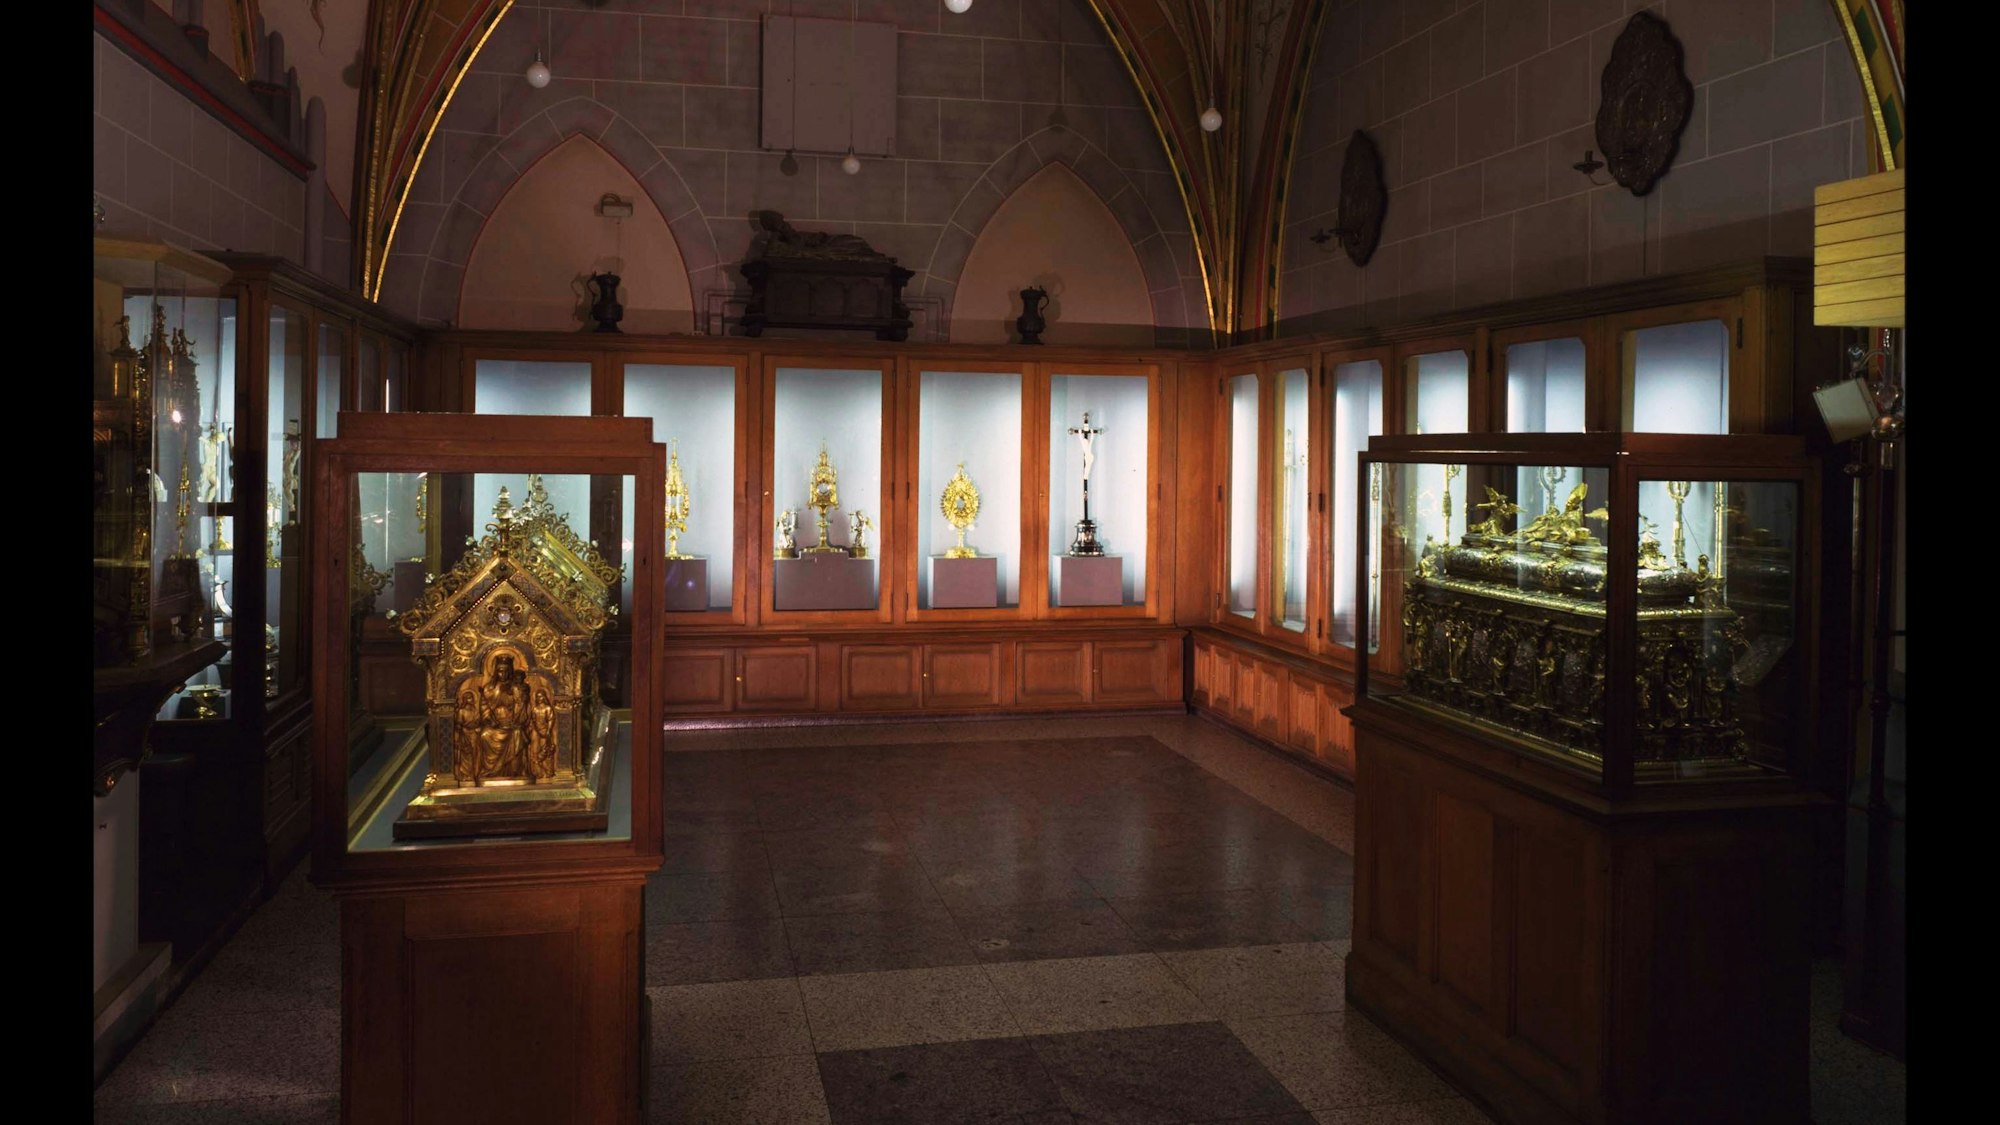 Blick in die alte Domschatzkammer vor dem Raub 1975, zu sehen sind Vitrinen mit goldenen Exponaten.